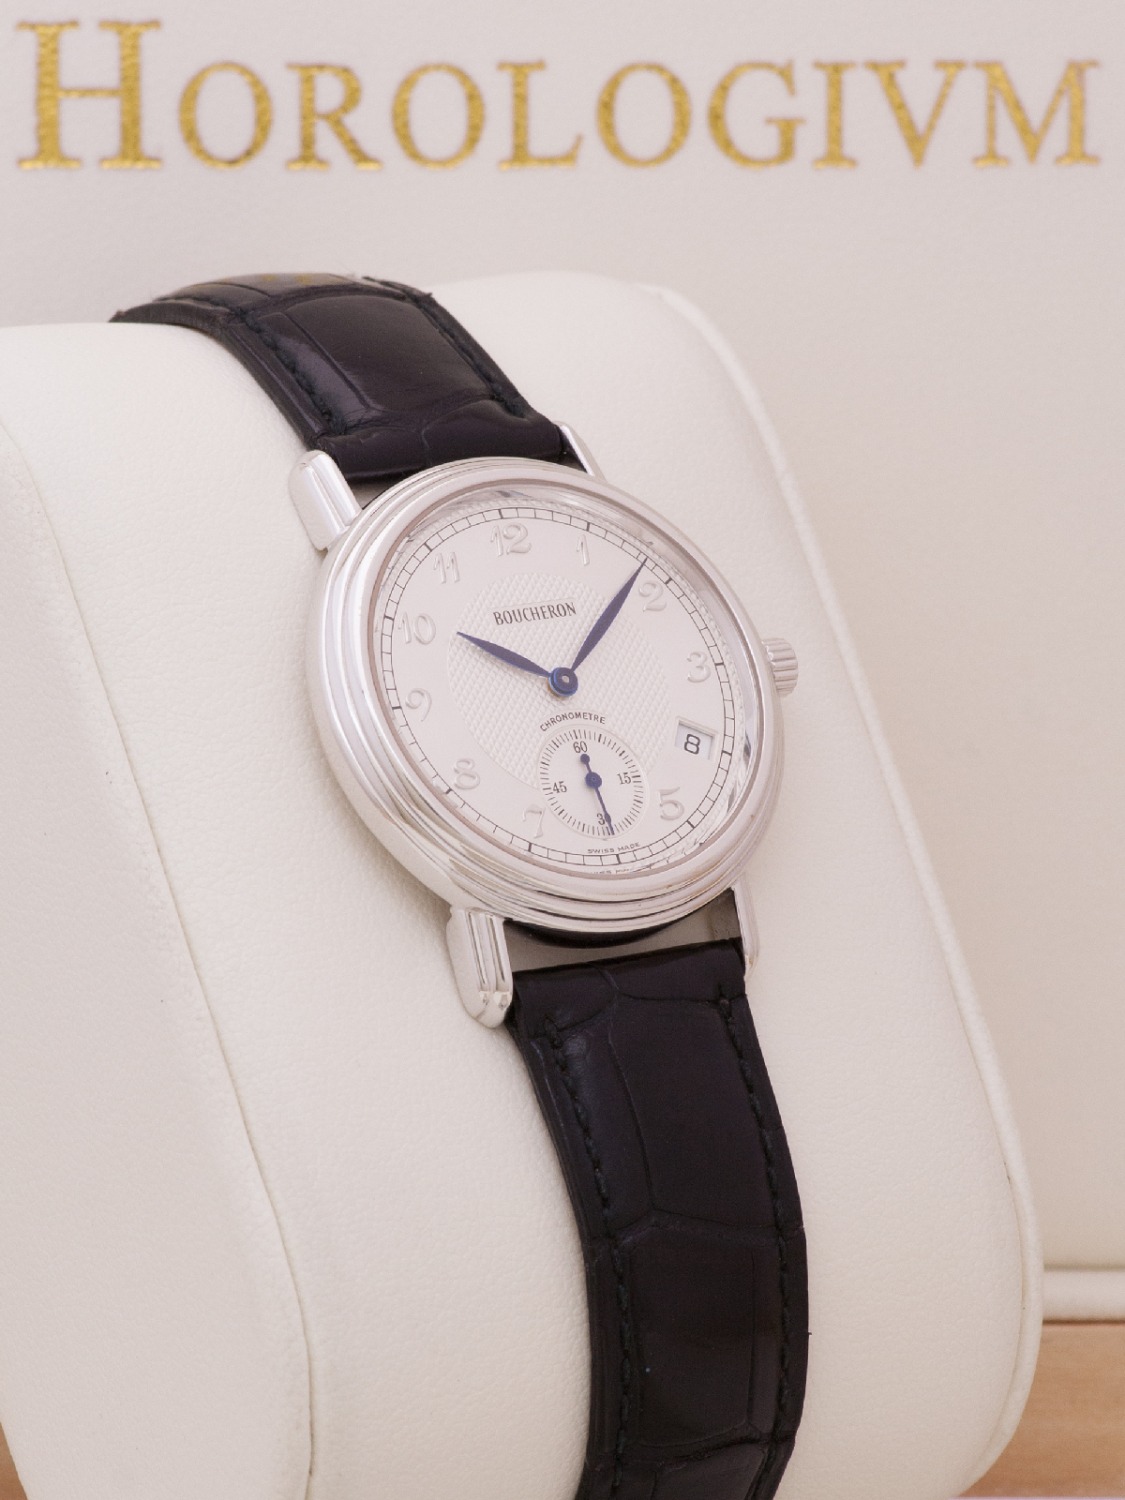 Boucheron Automatic Limited 140 pcs (1858-1998) watch, silver